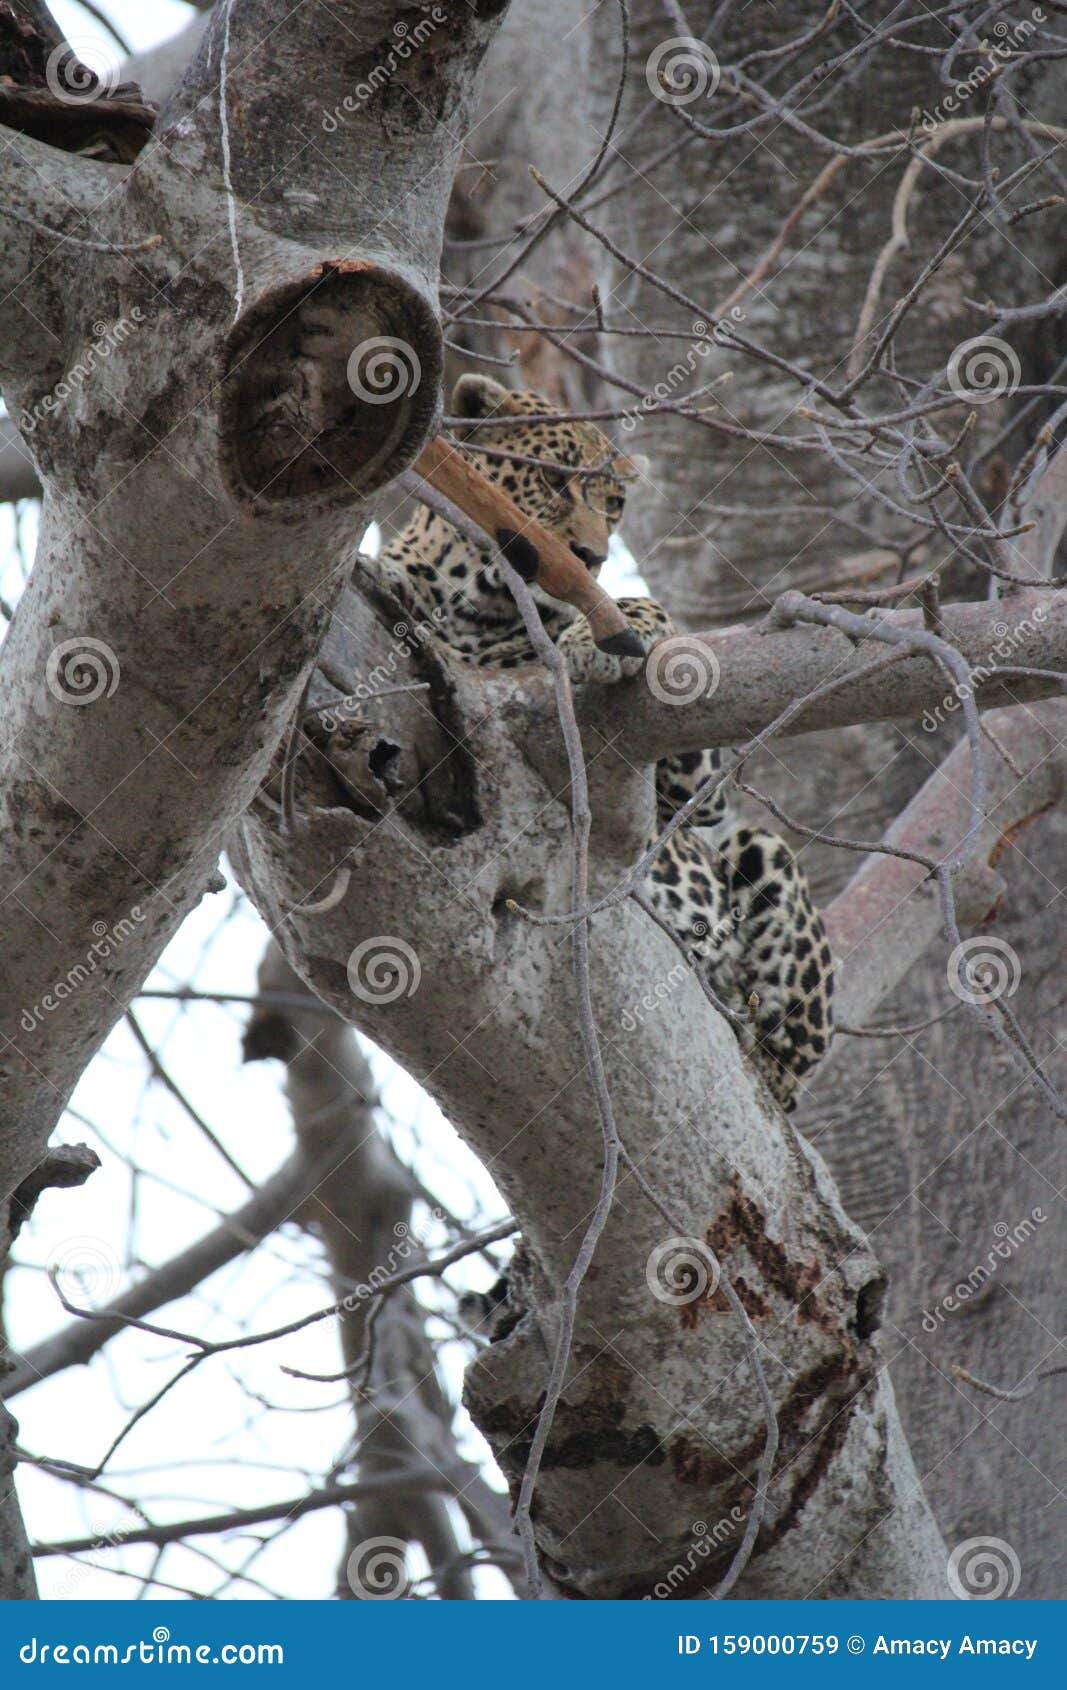 Animals at Serengeti National Park Stock Image - Image of bush, hunting:  159000759